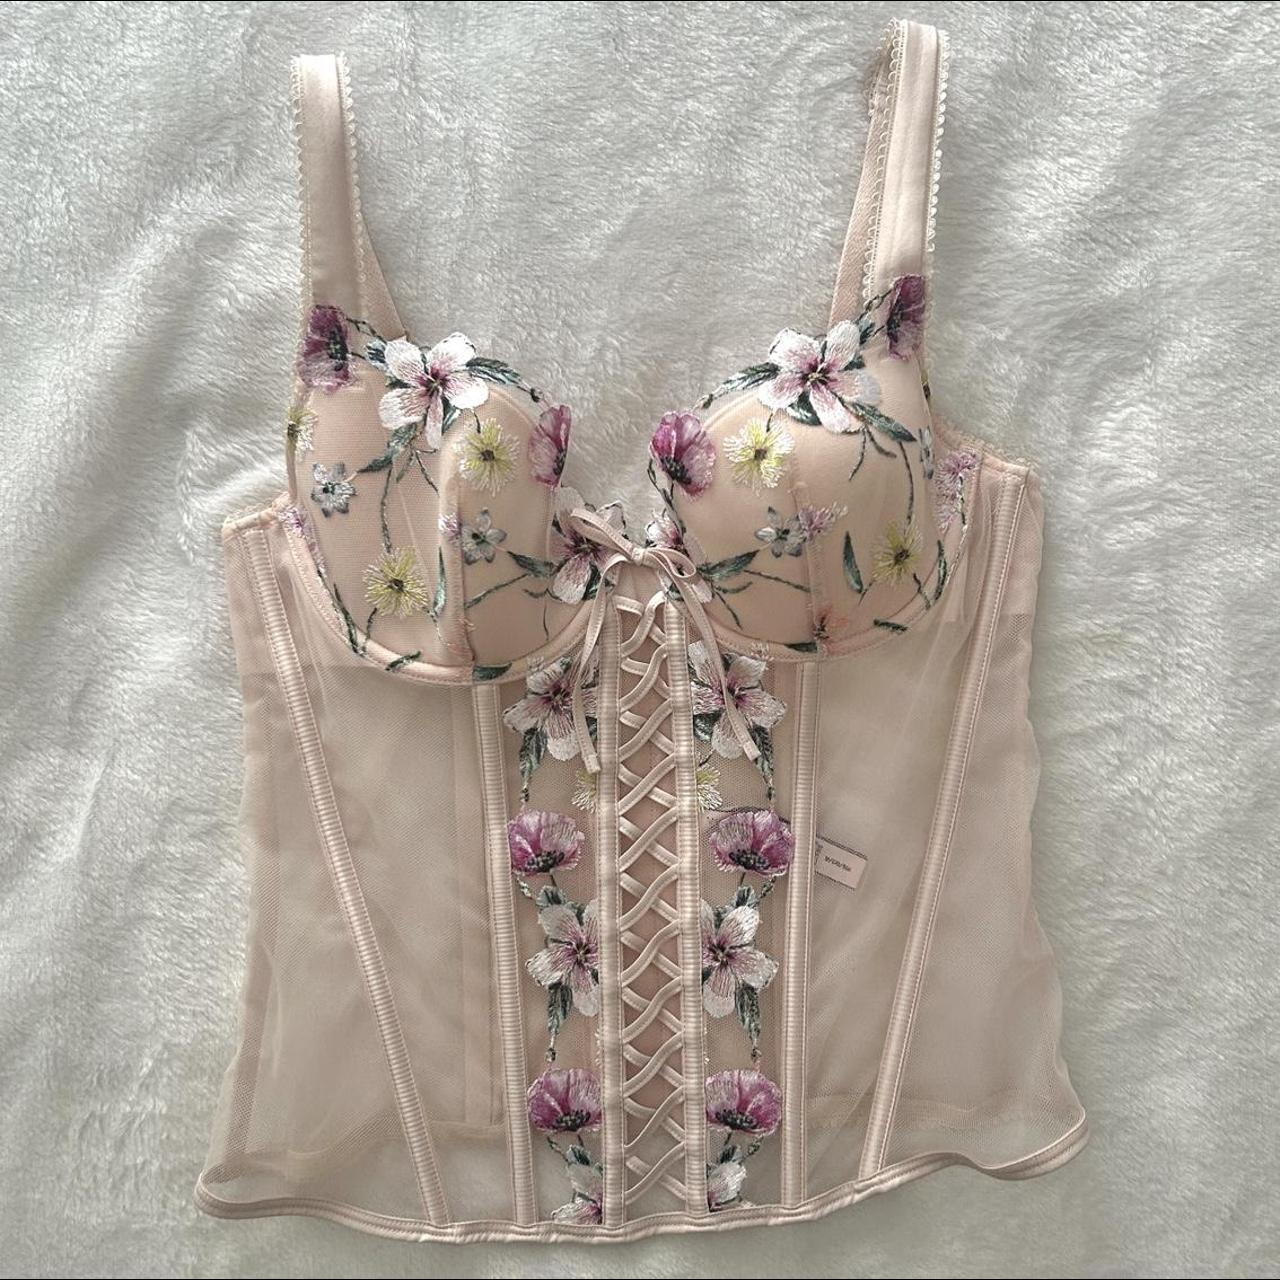 Victoria's Secret embroidered floral lace corset - Depop